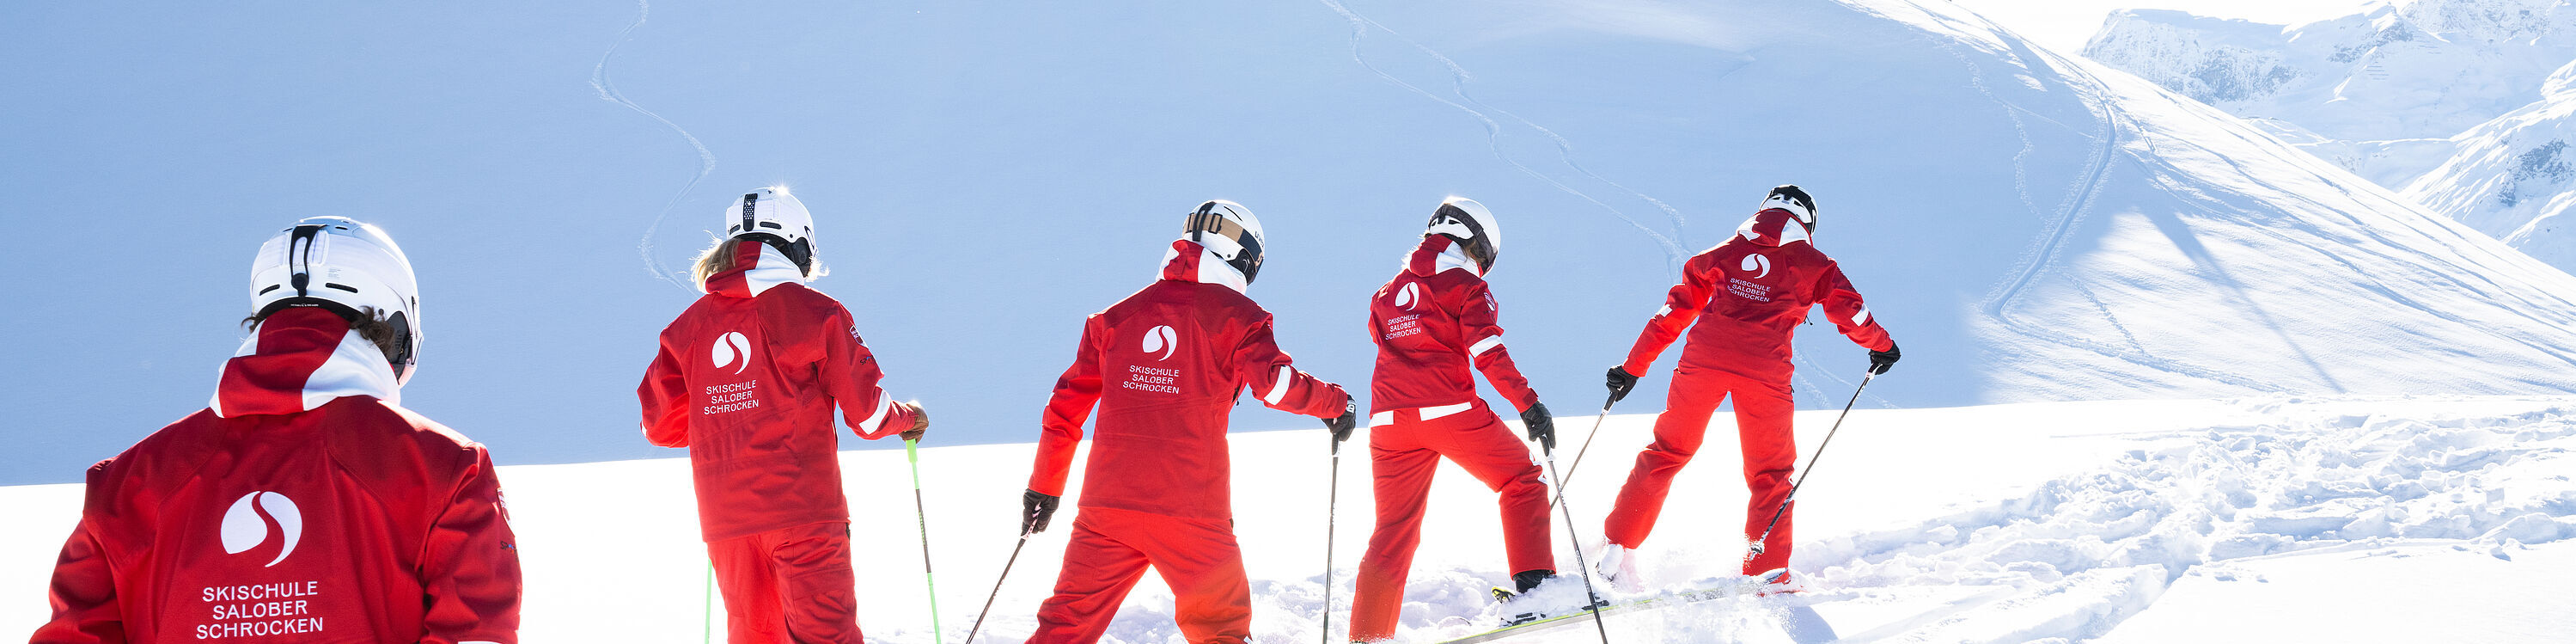 5 skileraren banen zich op ski's een weg door de diepe sneeuw